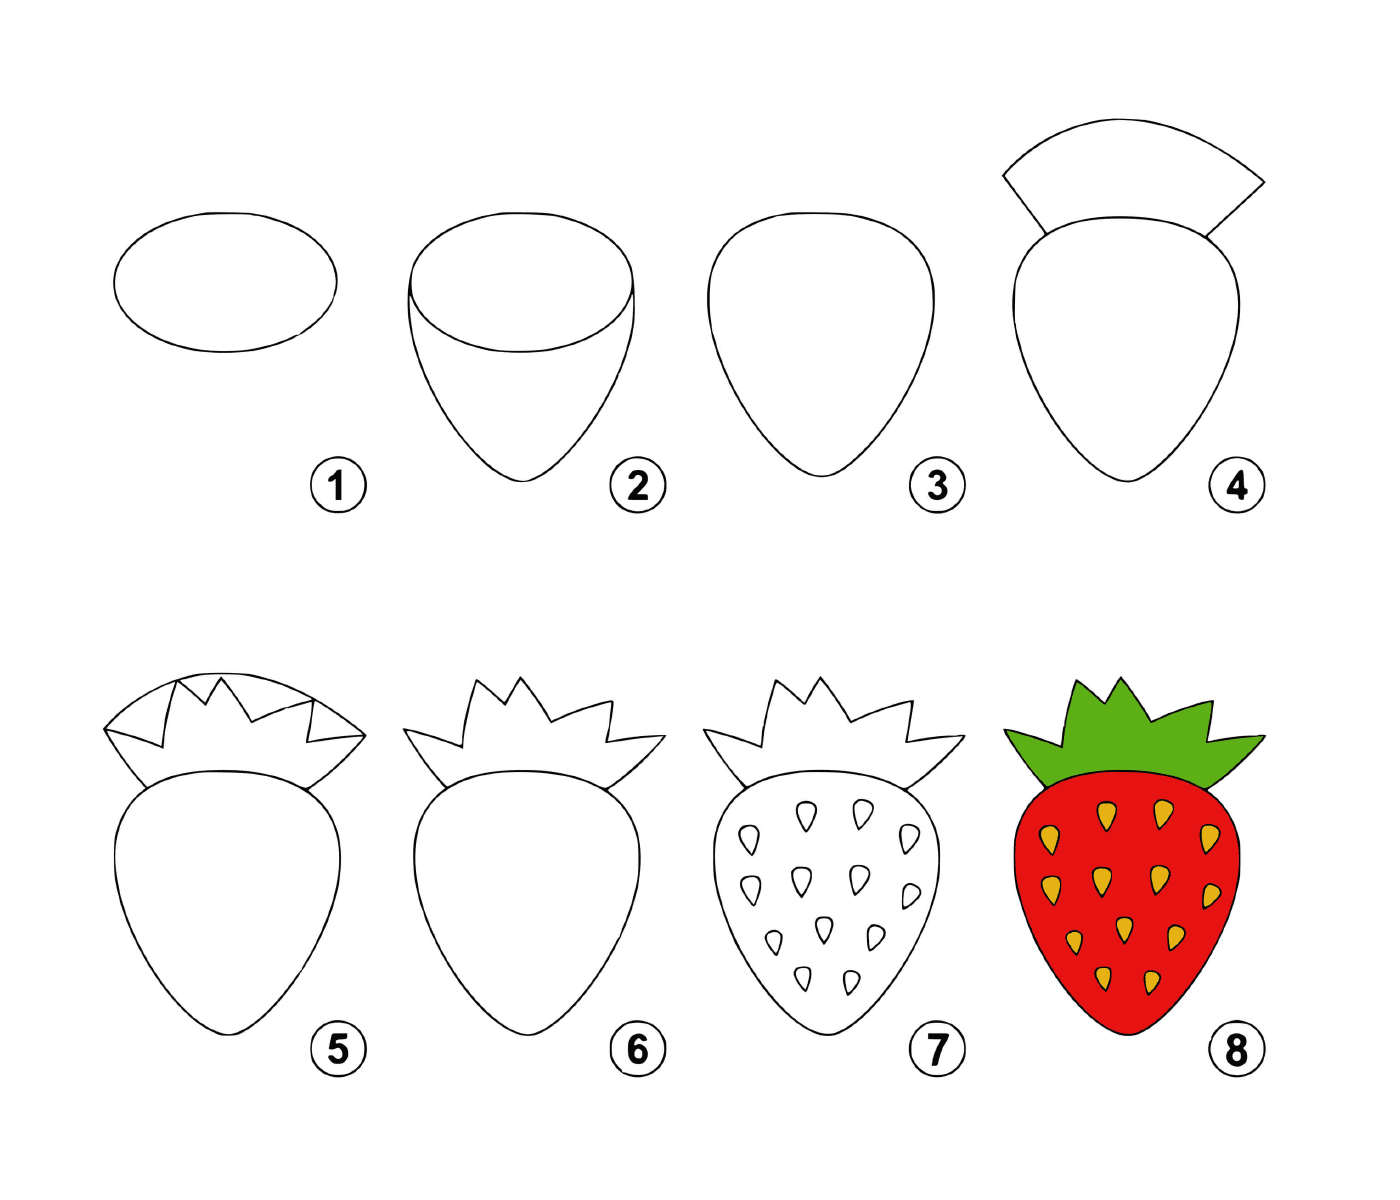  如何一步一步地绘制草莓 